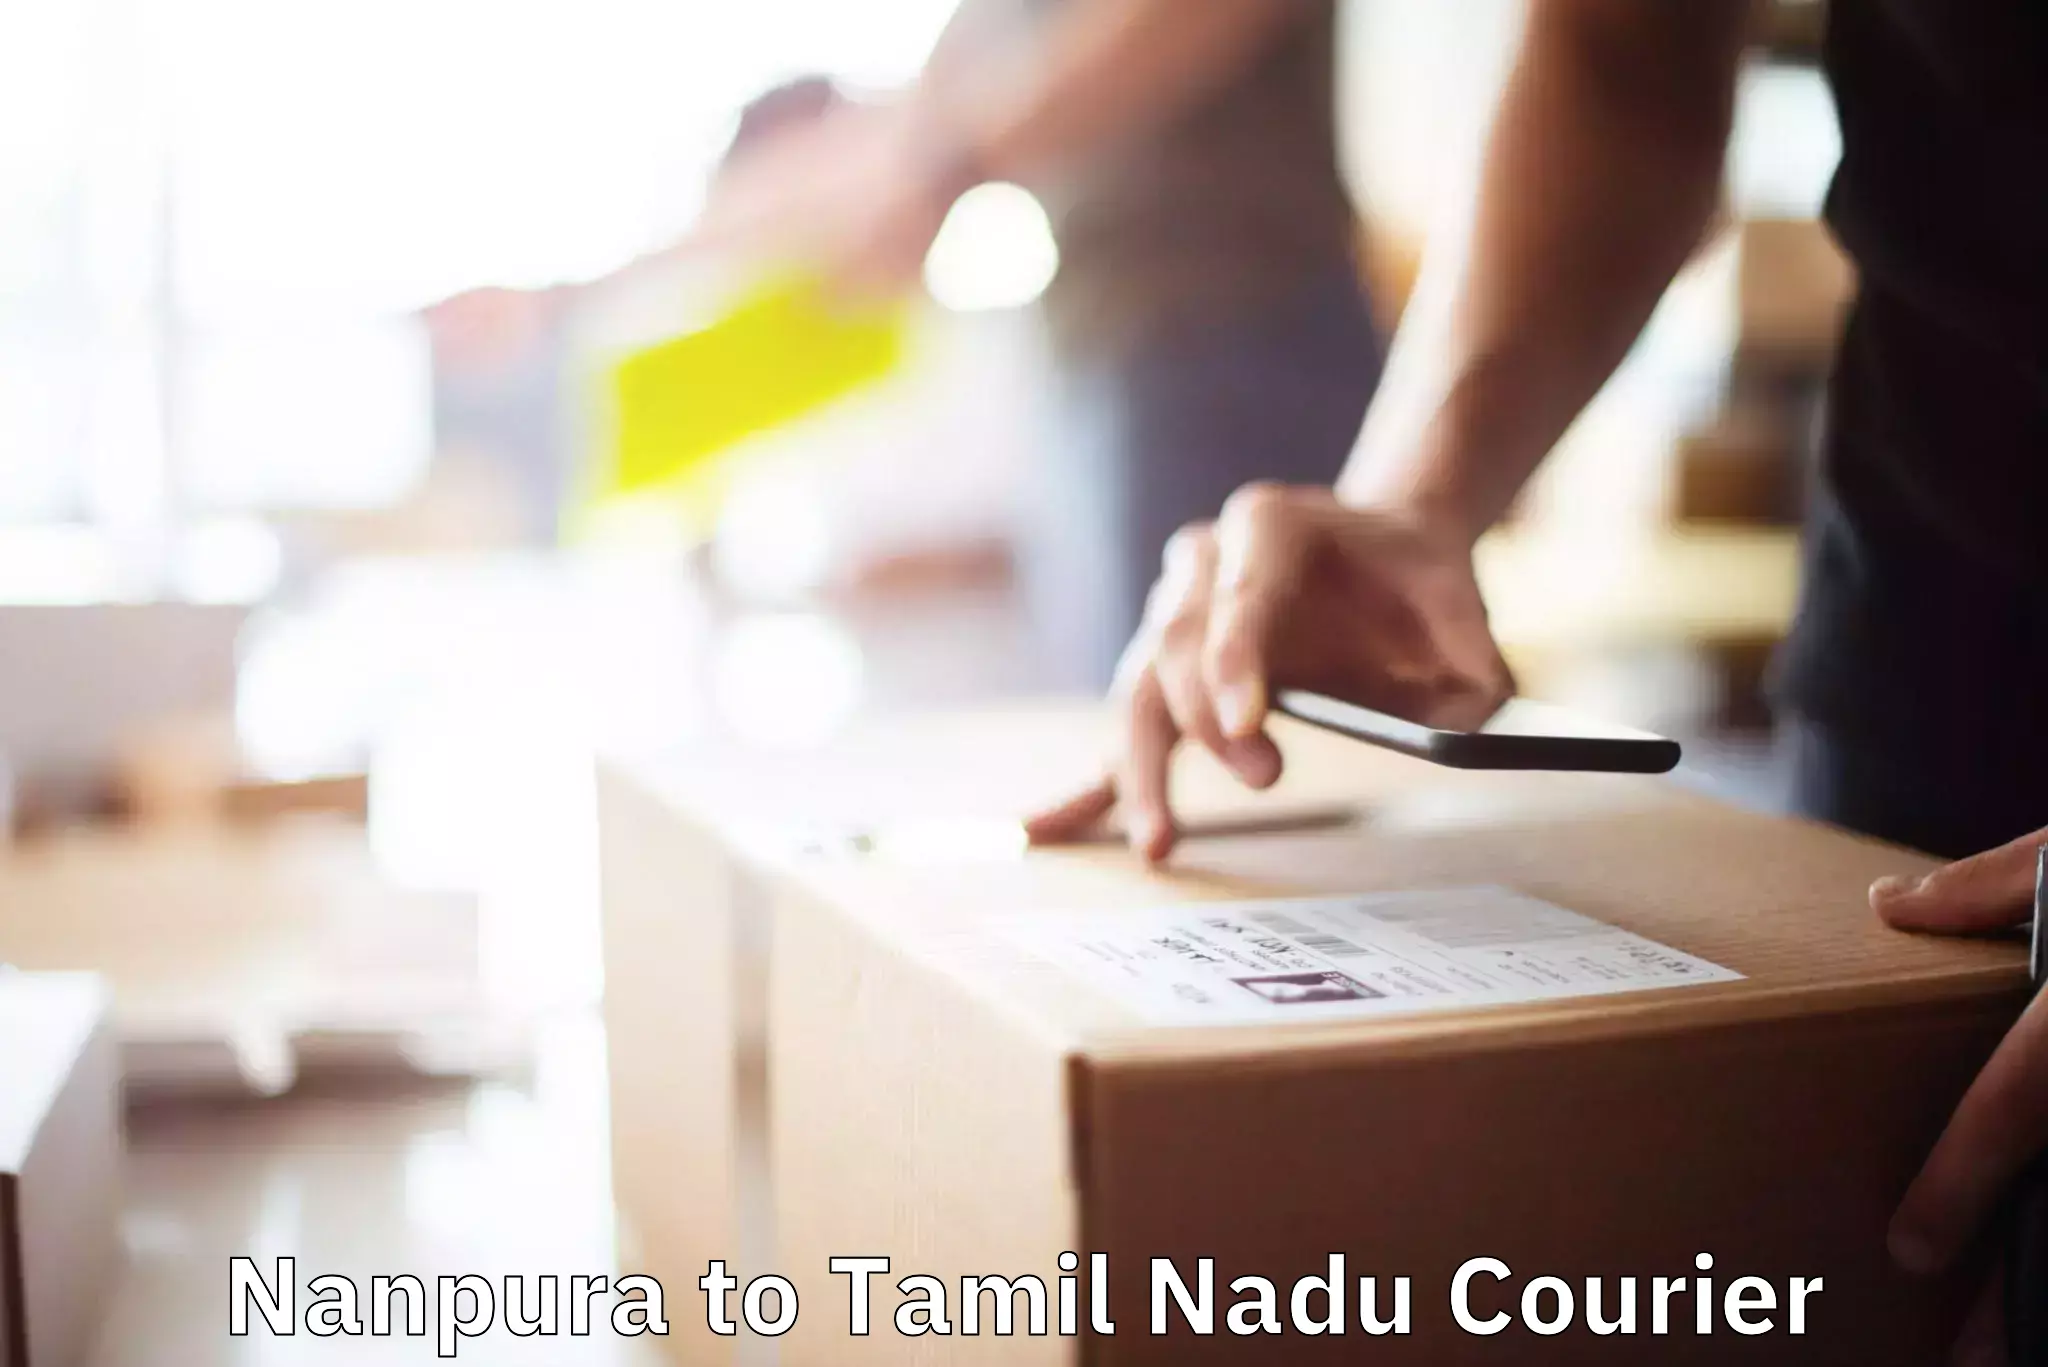 Furniture delivery service Nanpura to Vadipatti